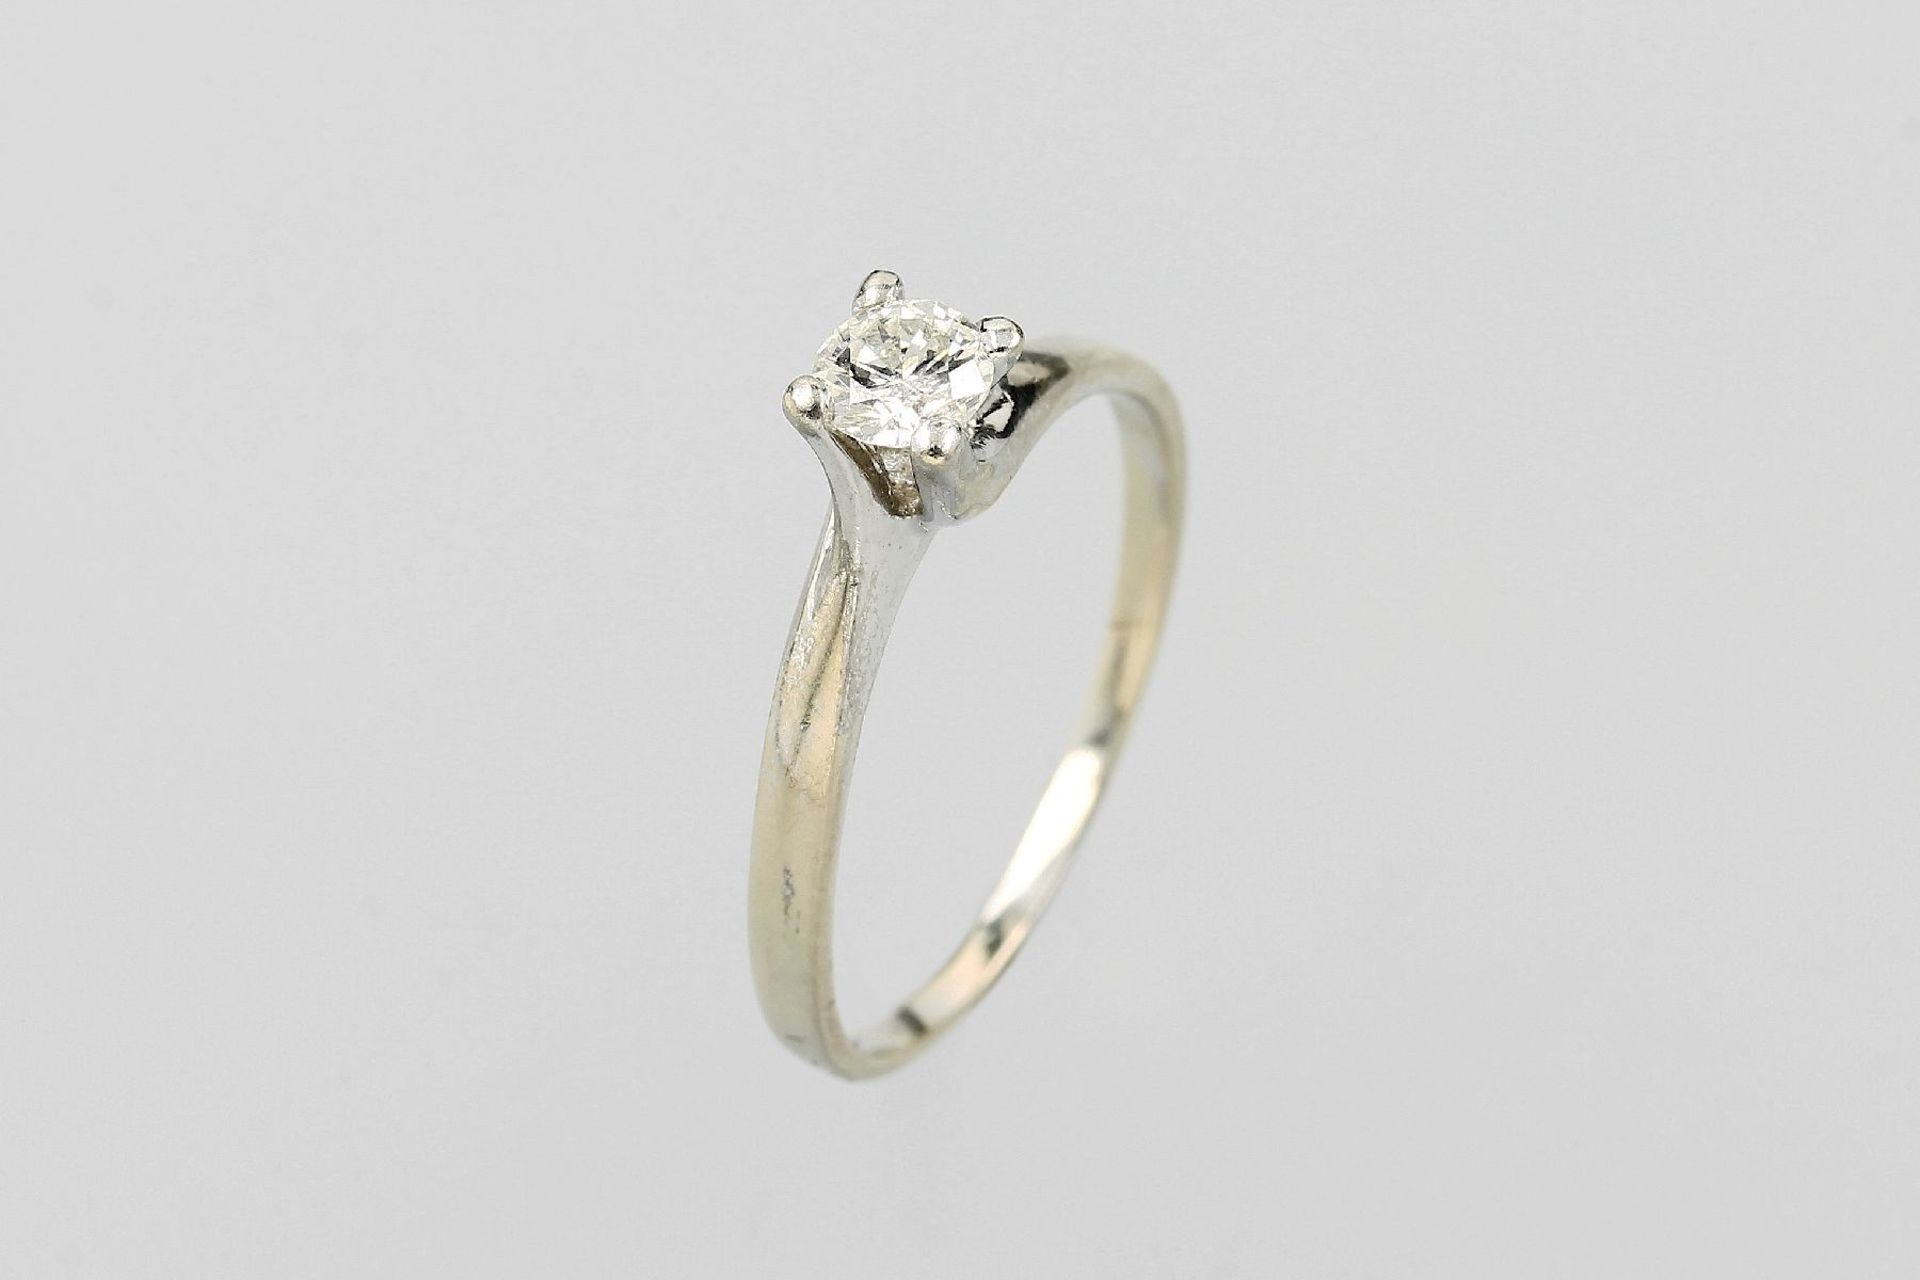 14 kt Gold Ring mit Brillant, WG 585/000, Brillant ca. 0.30 ct (grav.) Weiß/p, total ca.1.8 g, RW